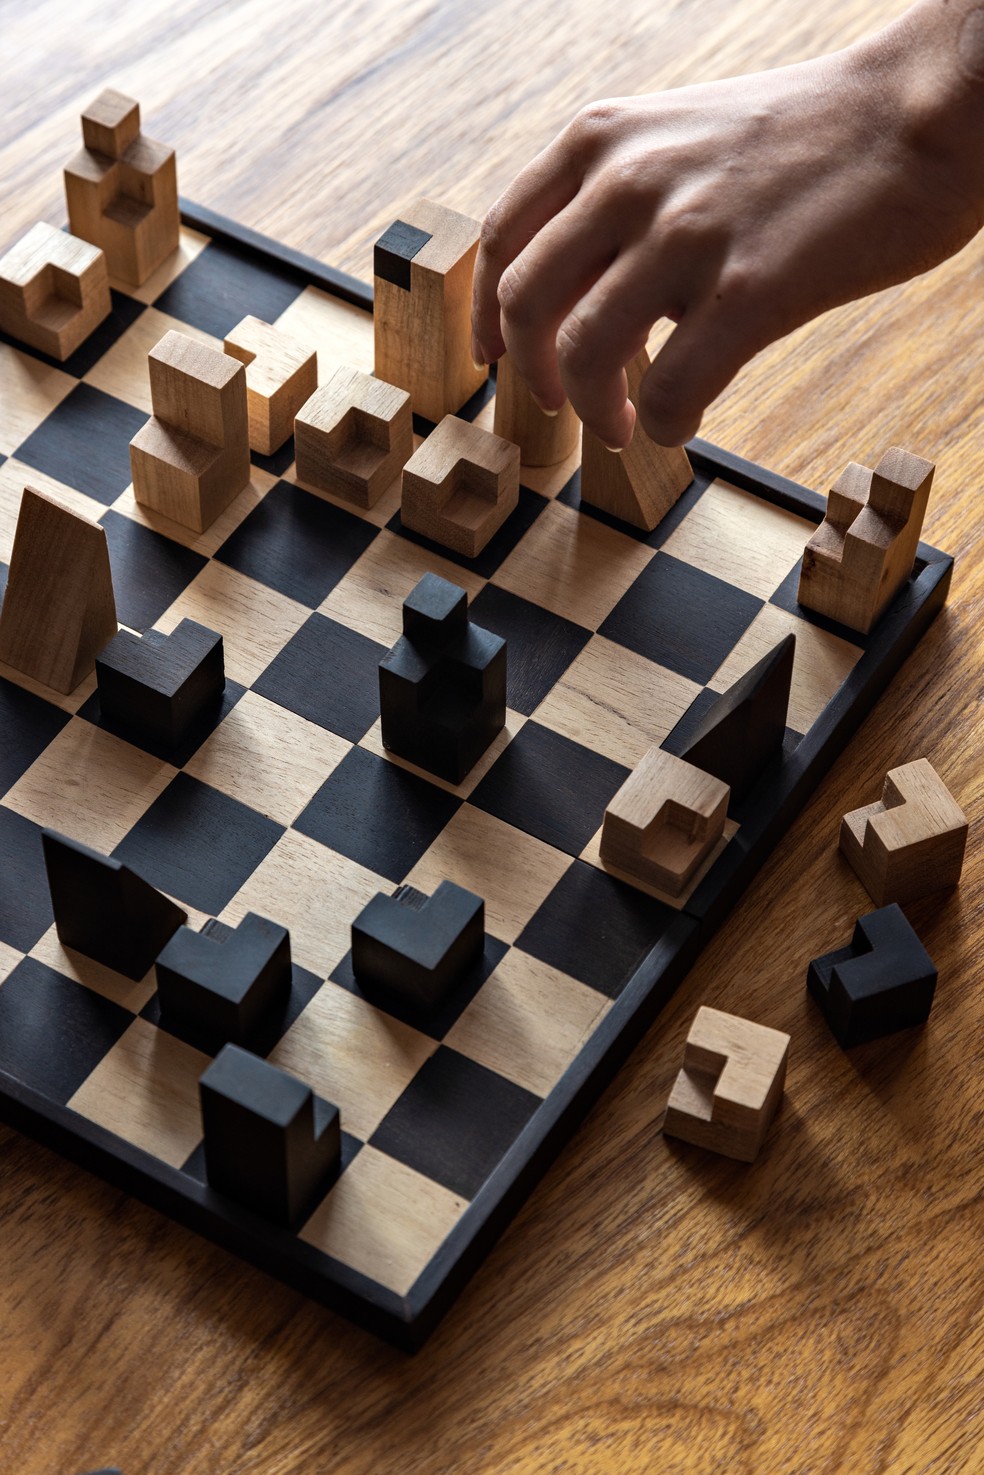 6 dicas para os amantes de xadrez